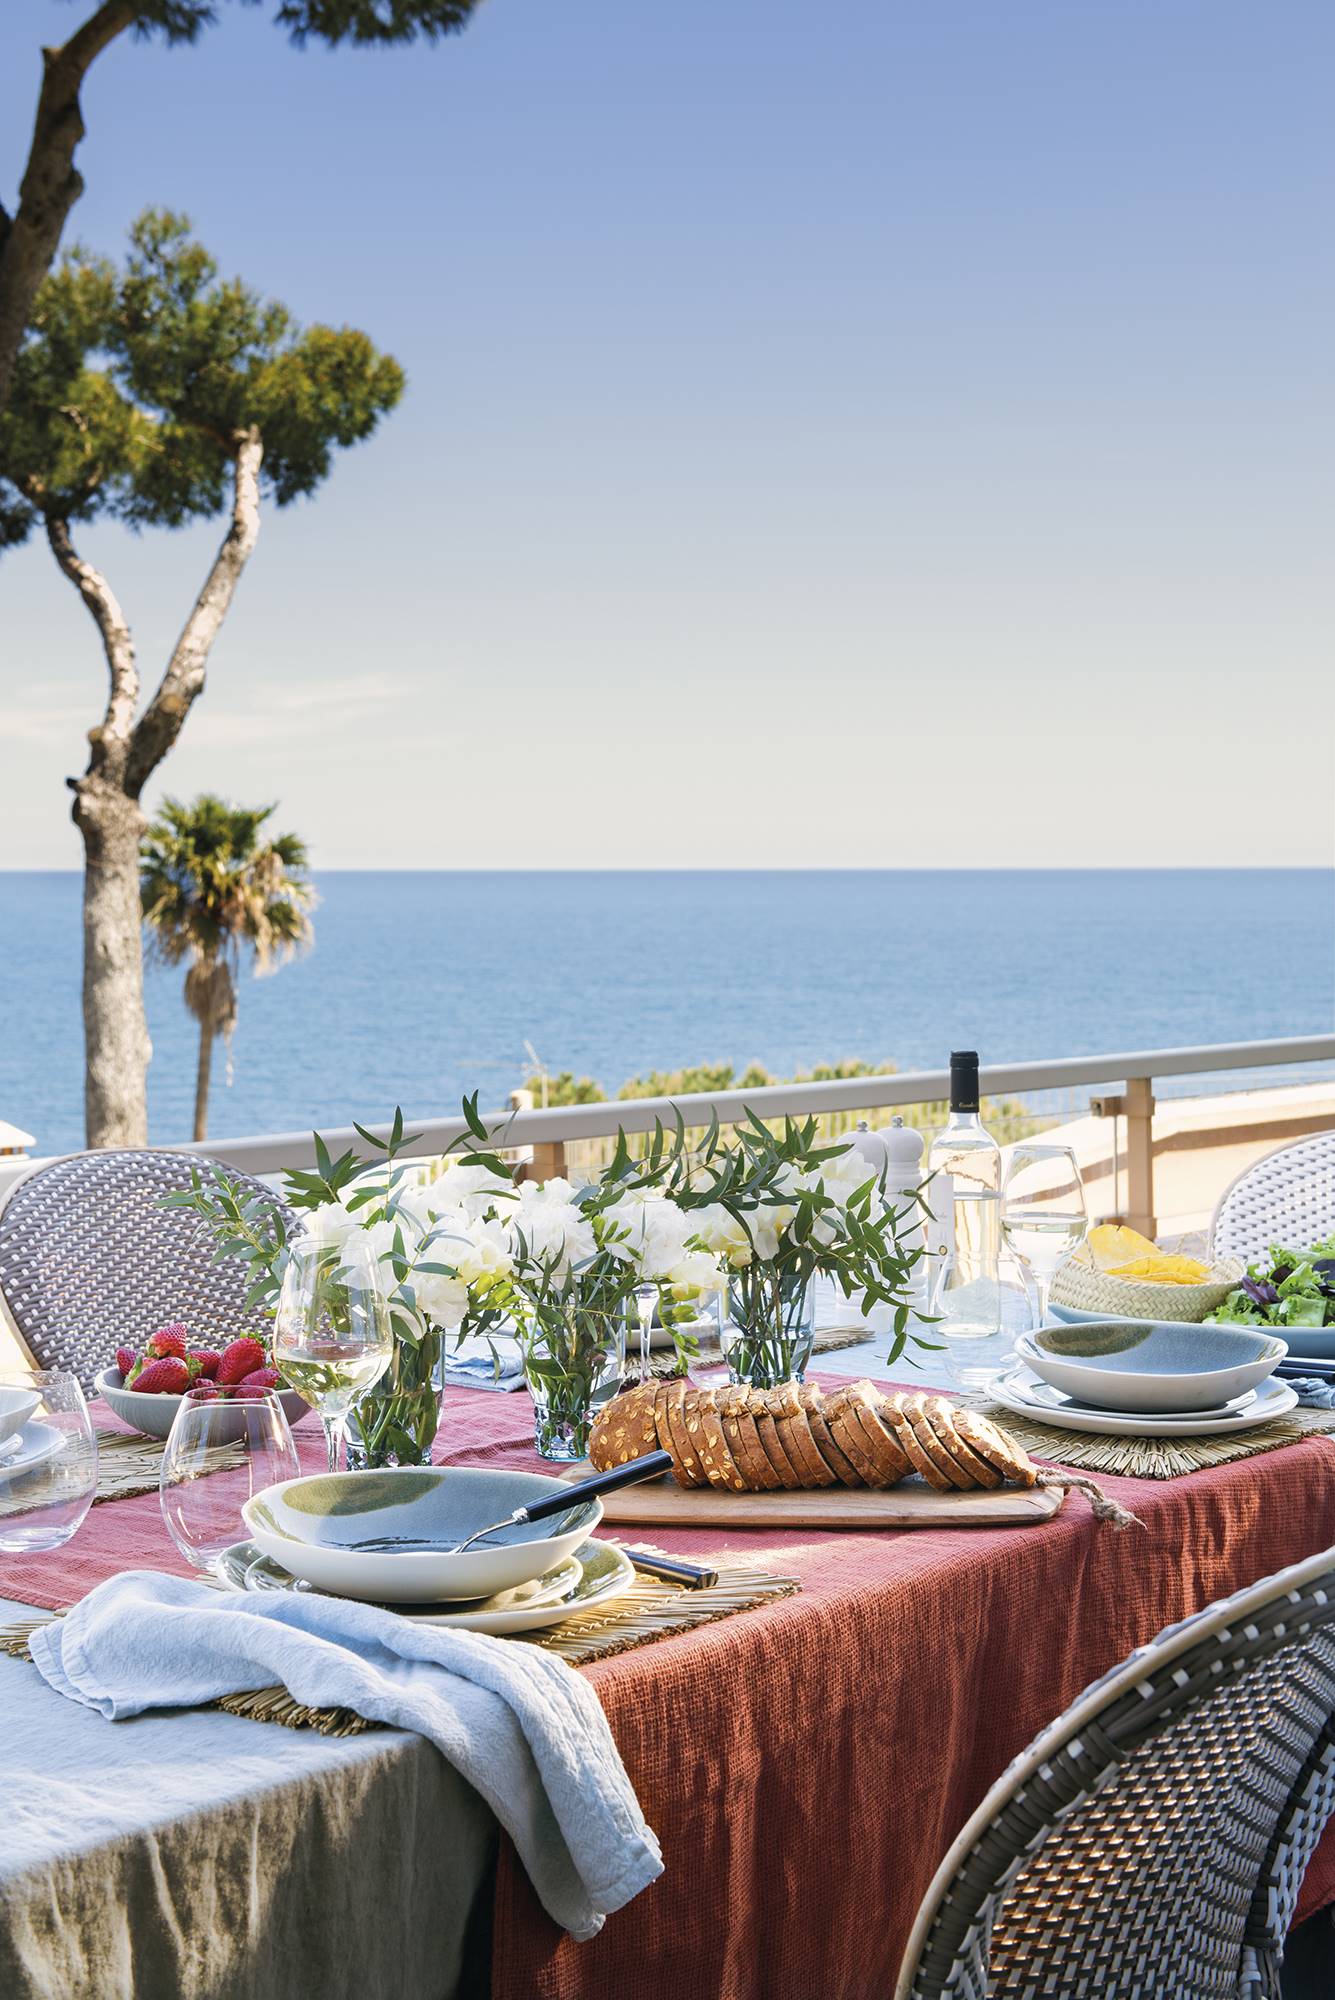 Comedor de verano en una terraza  con vistas al mar. 